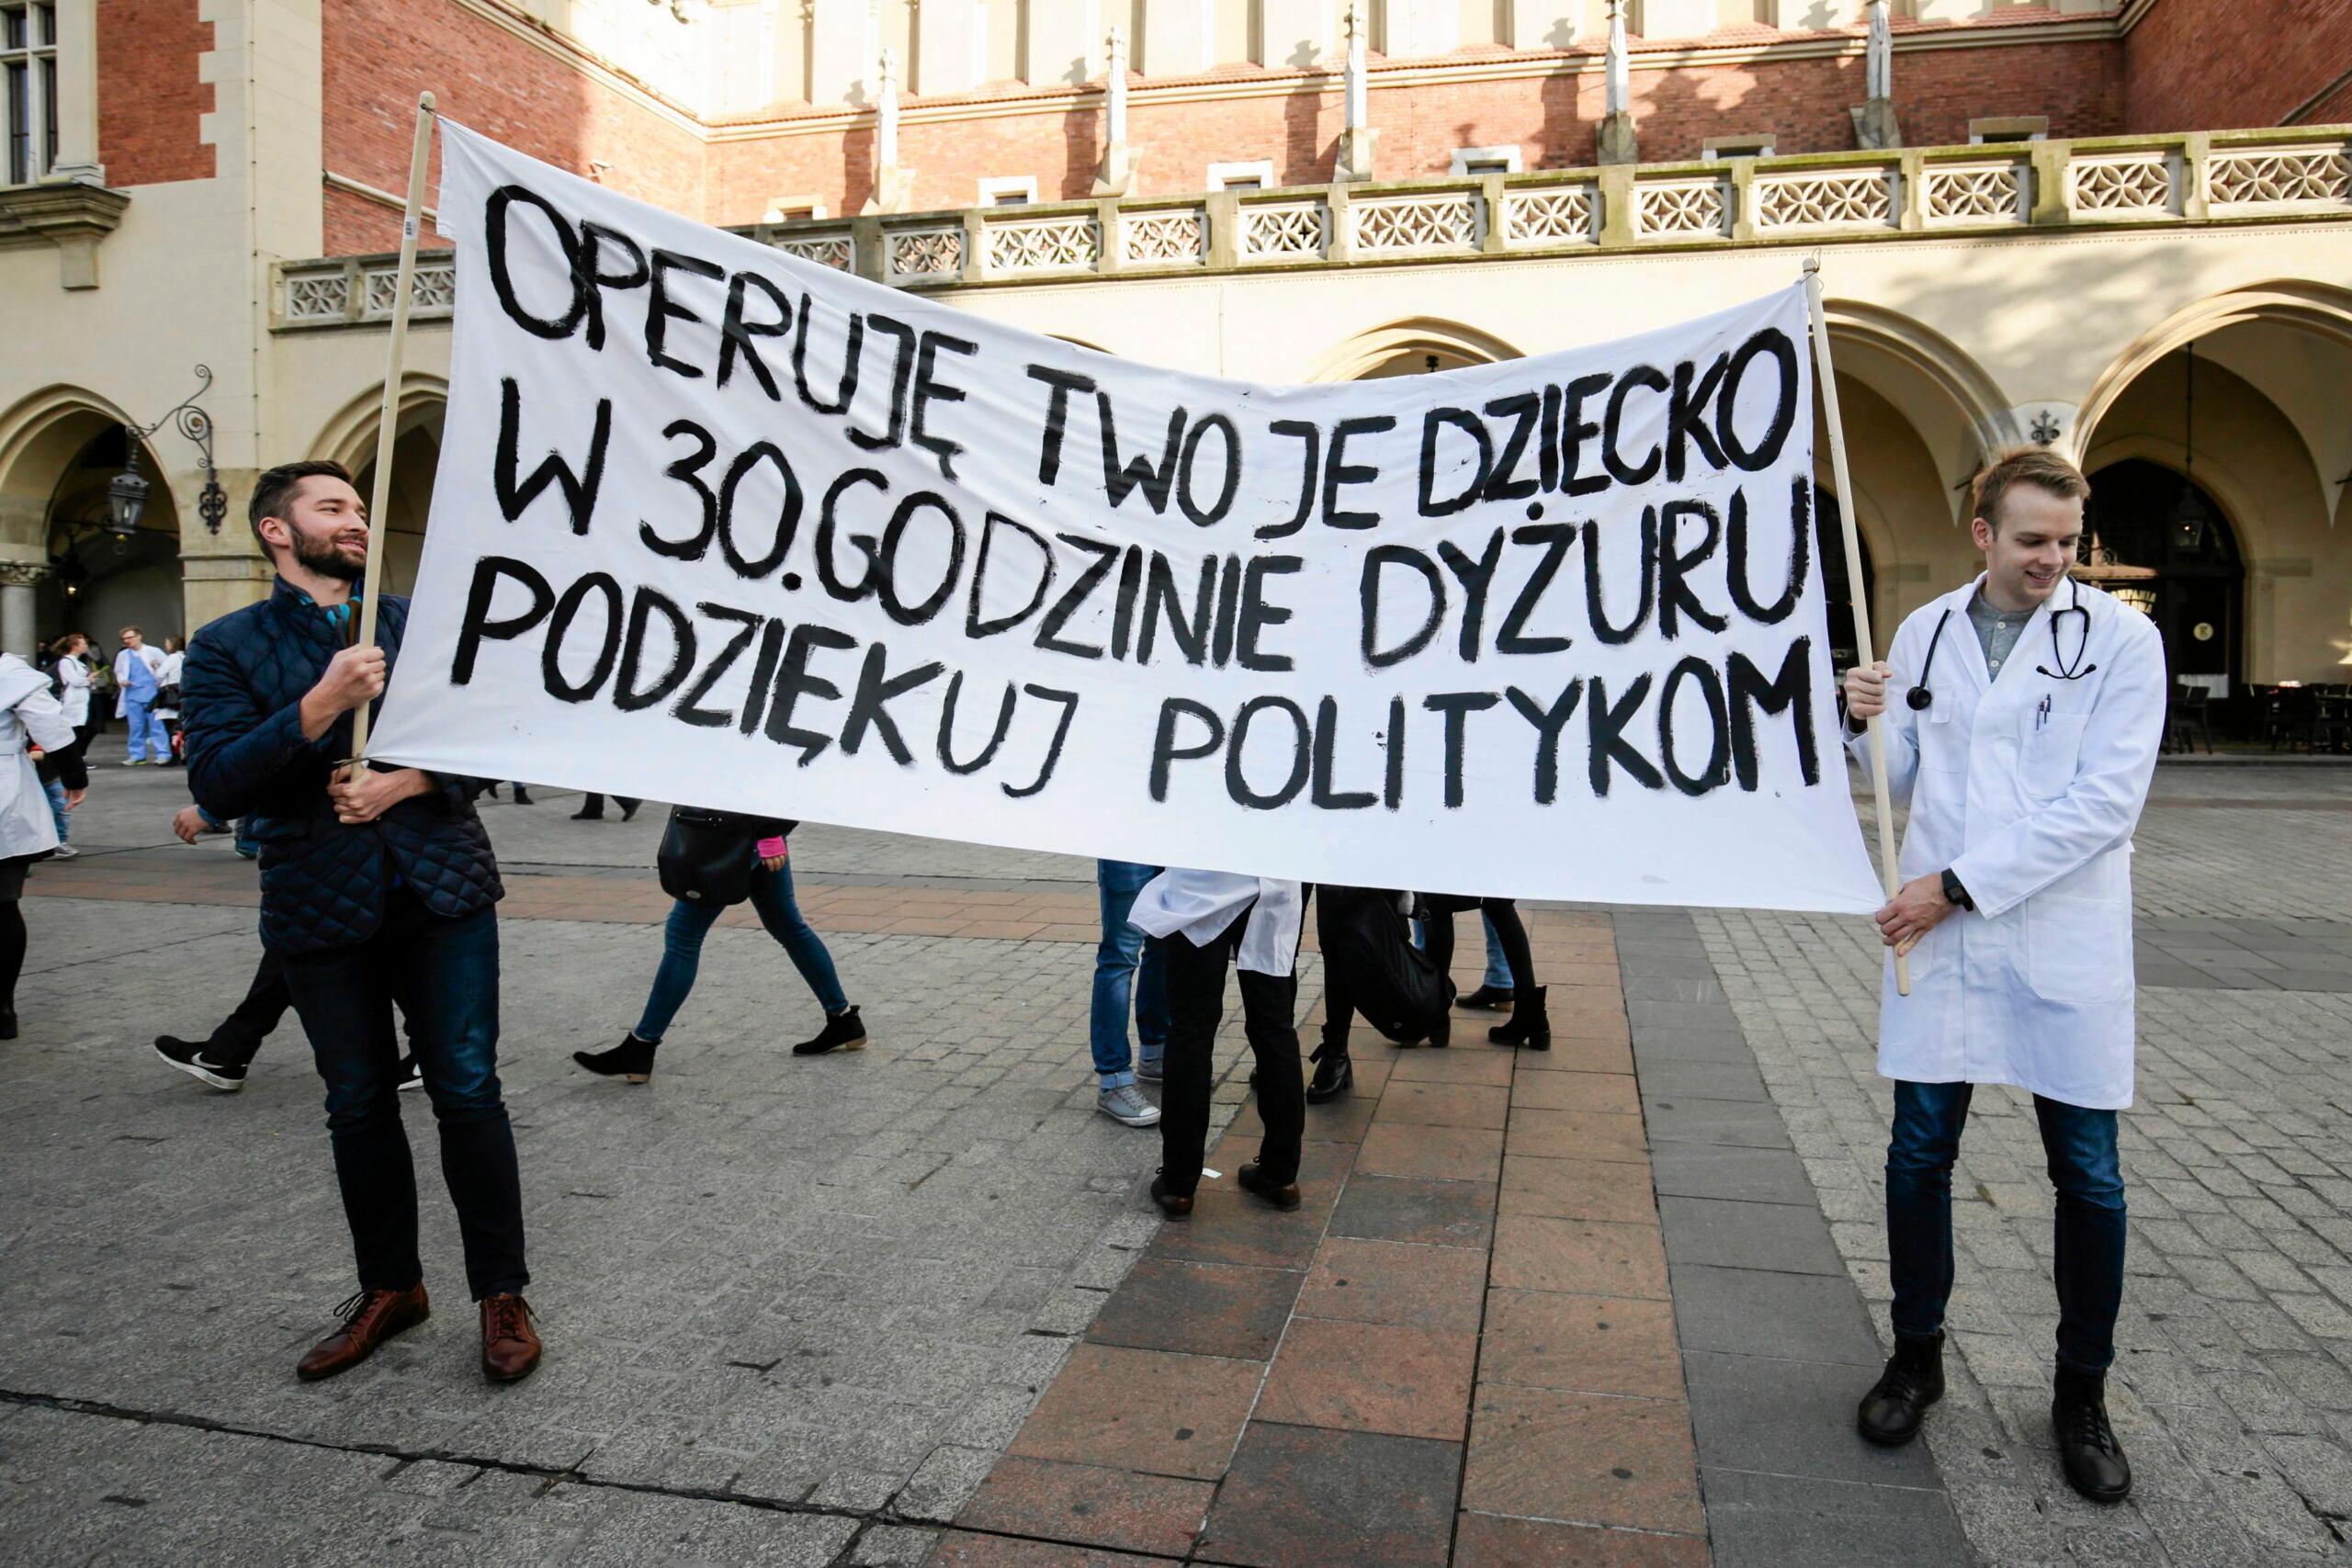 Osoby trzymające transparent z napisem „Operuję twoje dziecko w 30 godzinie dyżuru. Podziękuj politykom" podczas manifestacji solidarnościowej ze strajkującymi rezydentami, Rynek Główny w Krakowie, 2017 rok